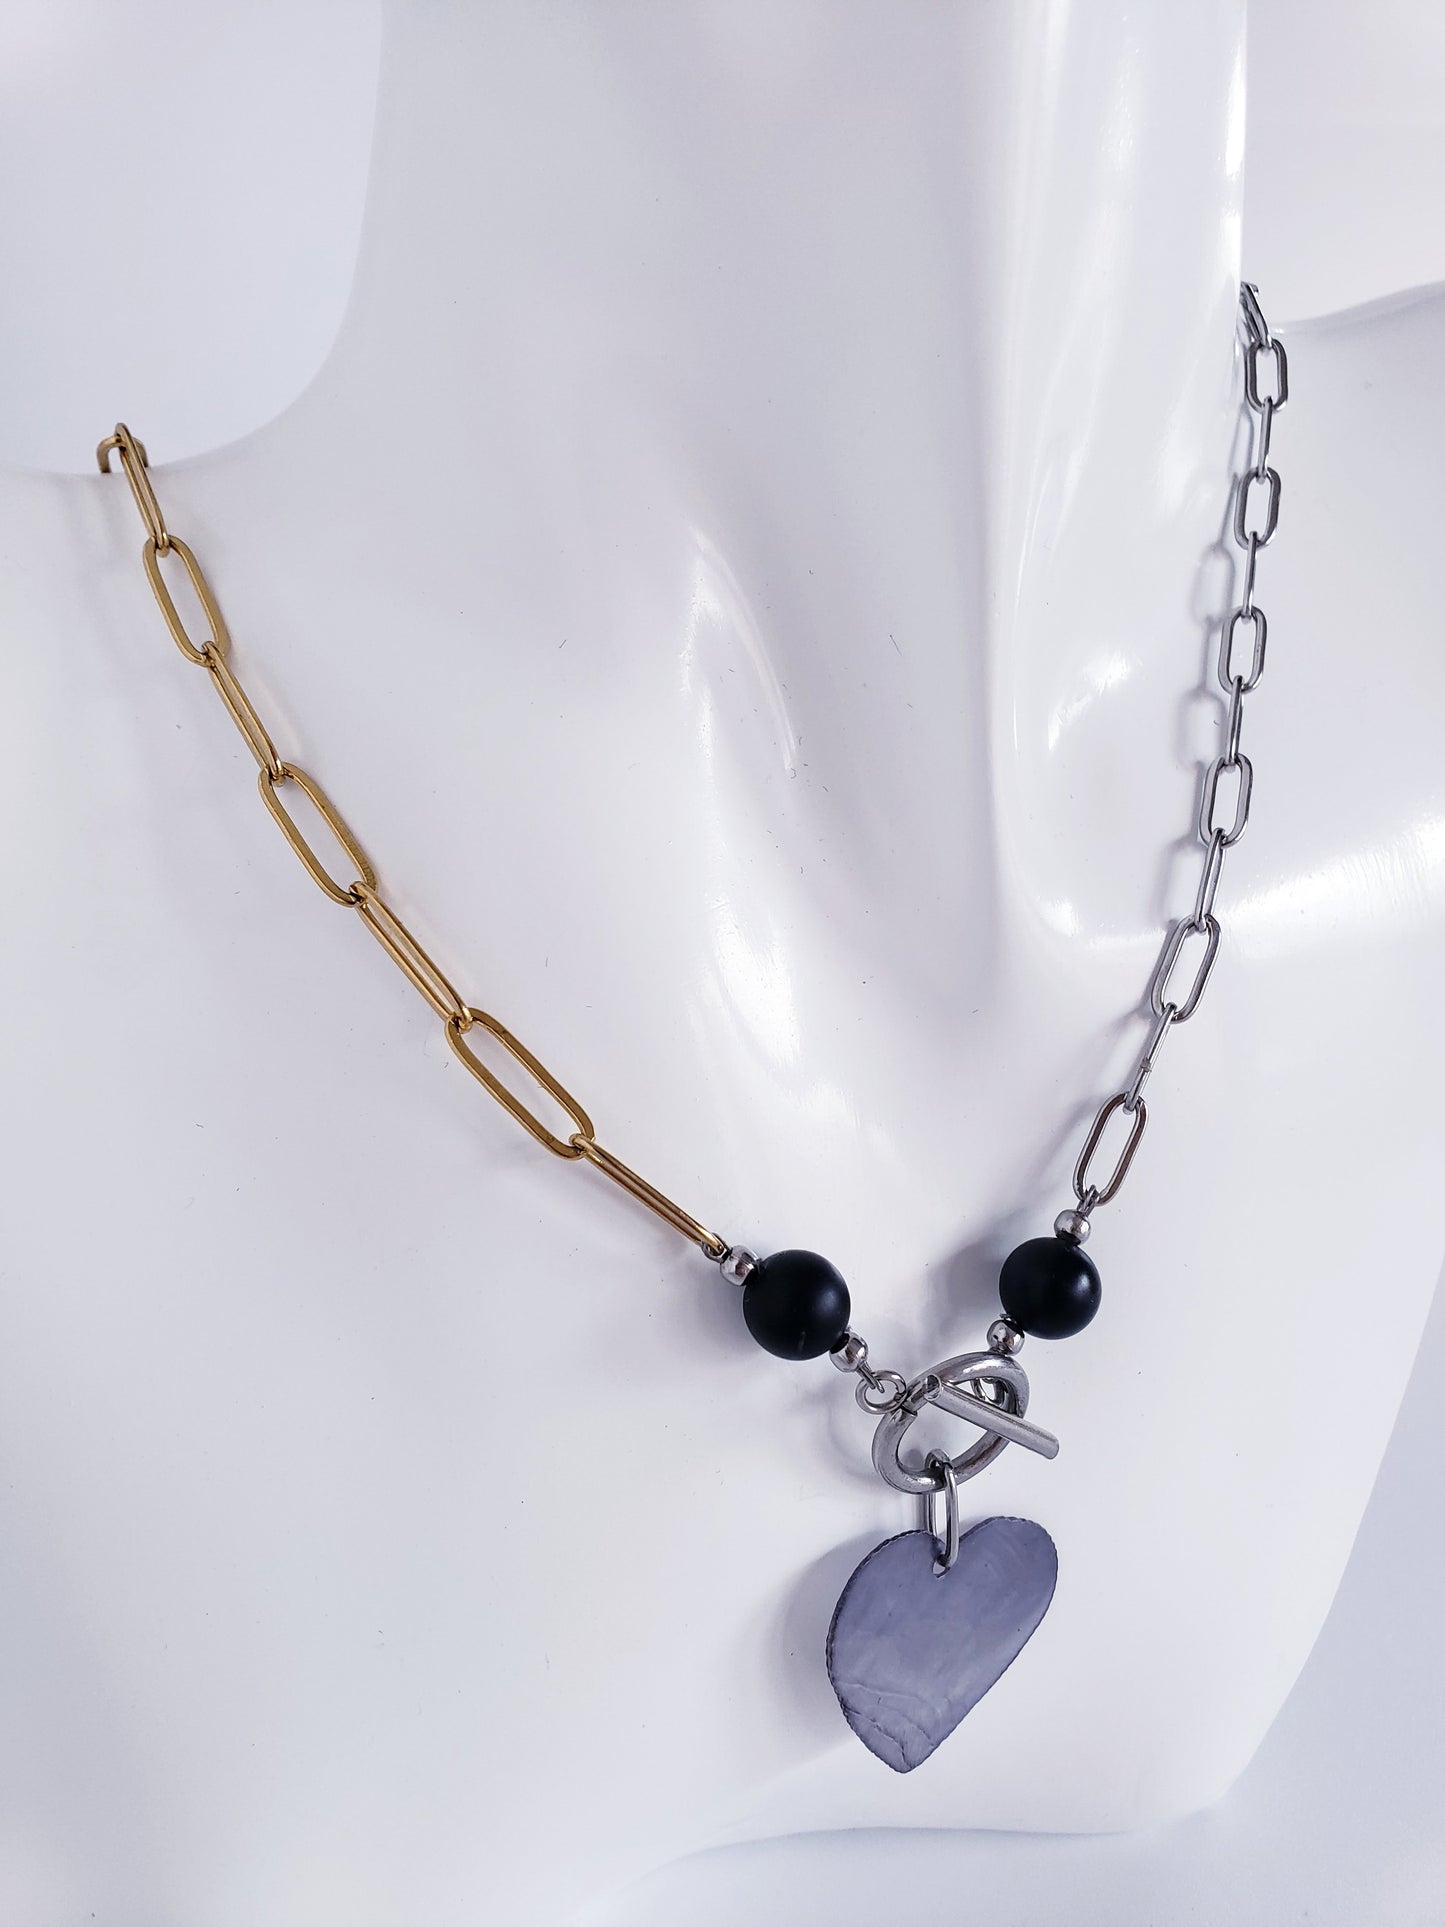 Moderno Collar combina el Color Dorado y el Plata, junto con llamativa piedra preciosa de ónix negro y Un Colgante Capiz en Forma de Corazon…